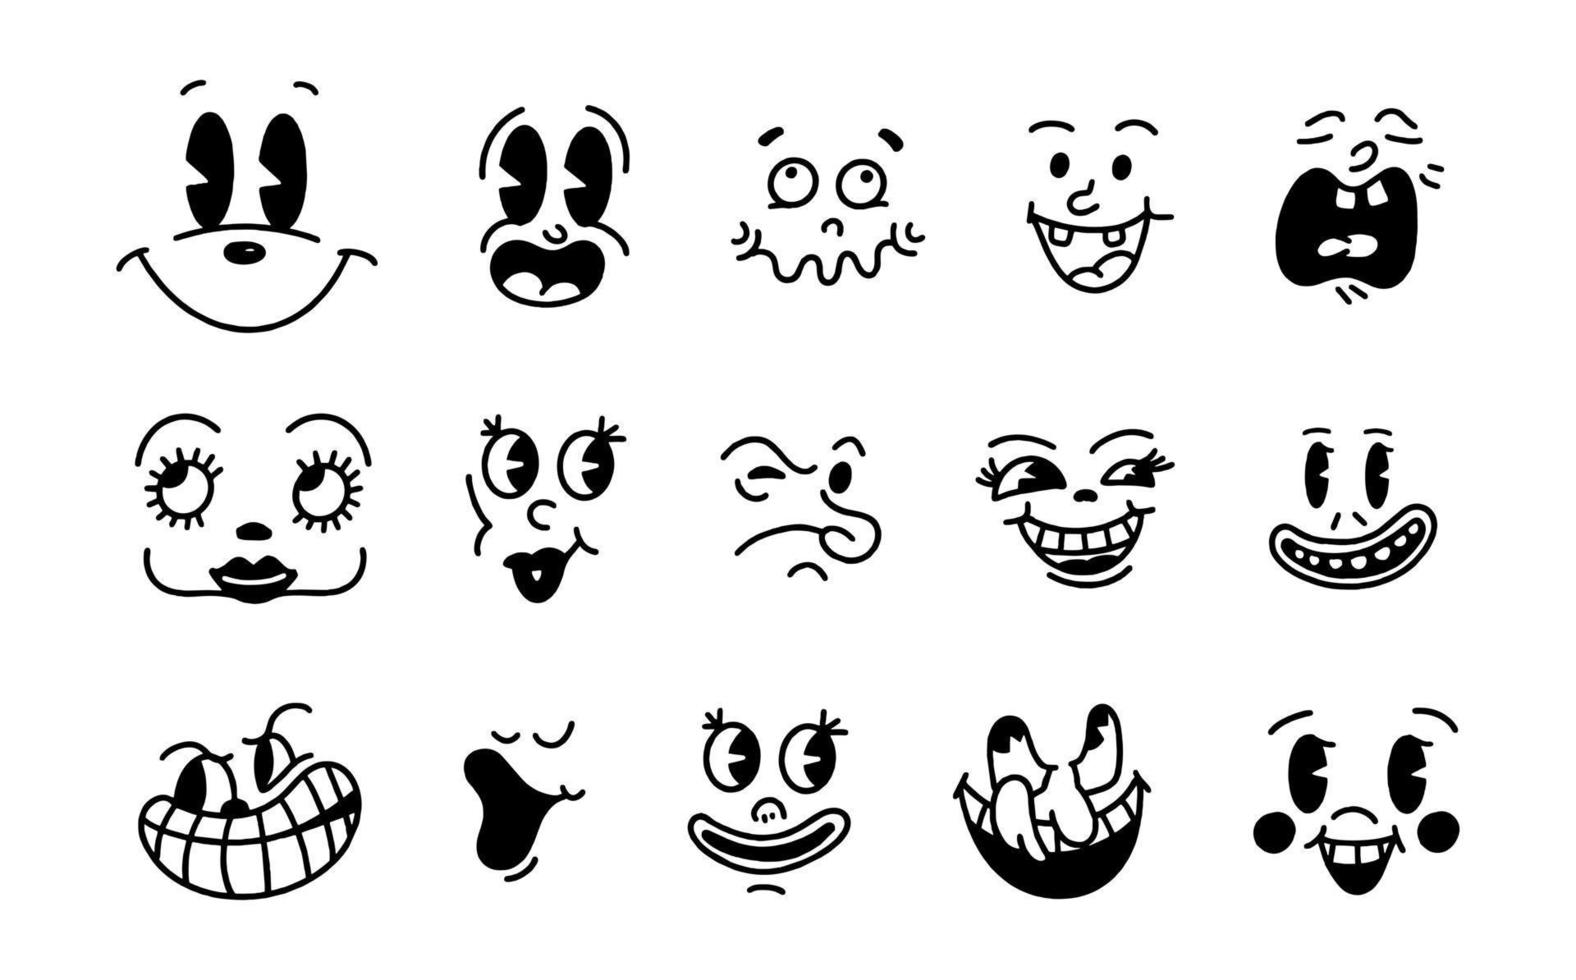 sonrisa cara emoji retro. caras de personajes de dibujos animados de los años 30. Ilustración de vector de sonrisa cómica vintage